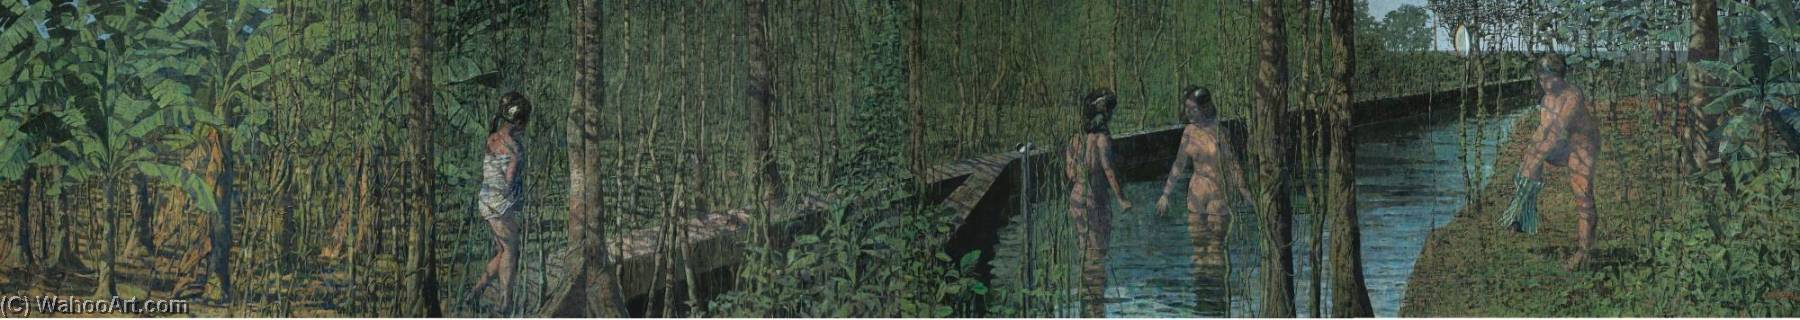 Wikioo.org - The Encyclopedia of Fine Arts - Painting, Artwork by Armando Morales - Cuatro ba ntilde istas en canal de plantación